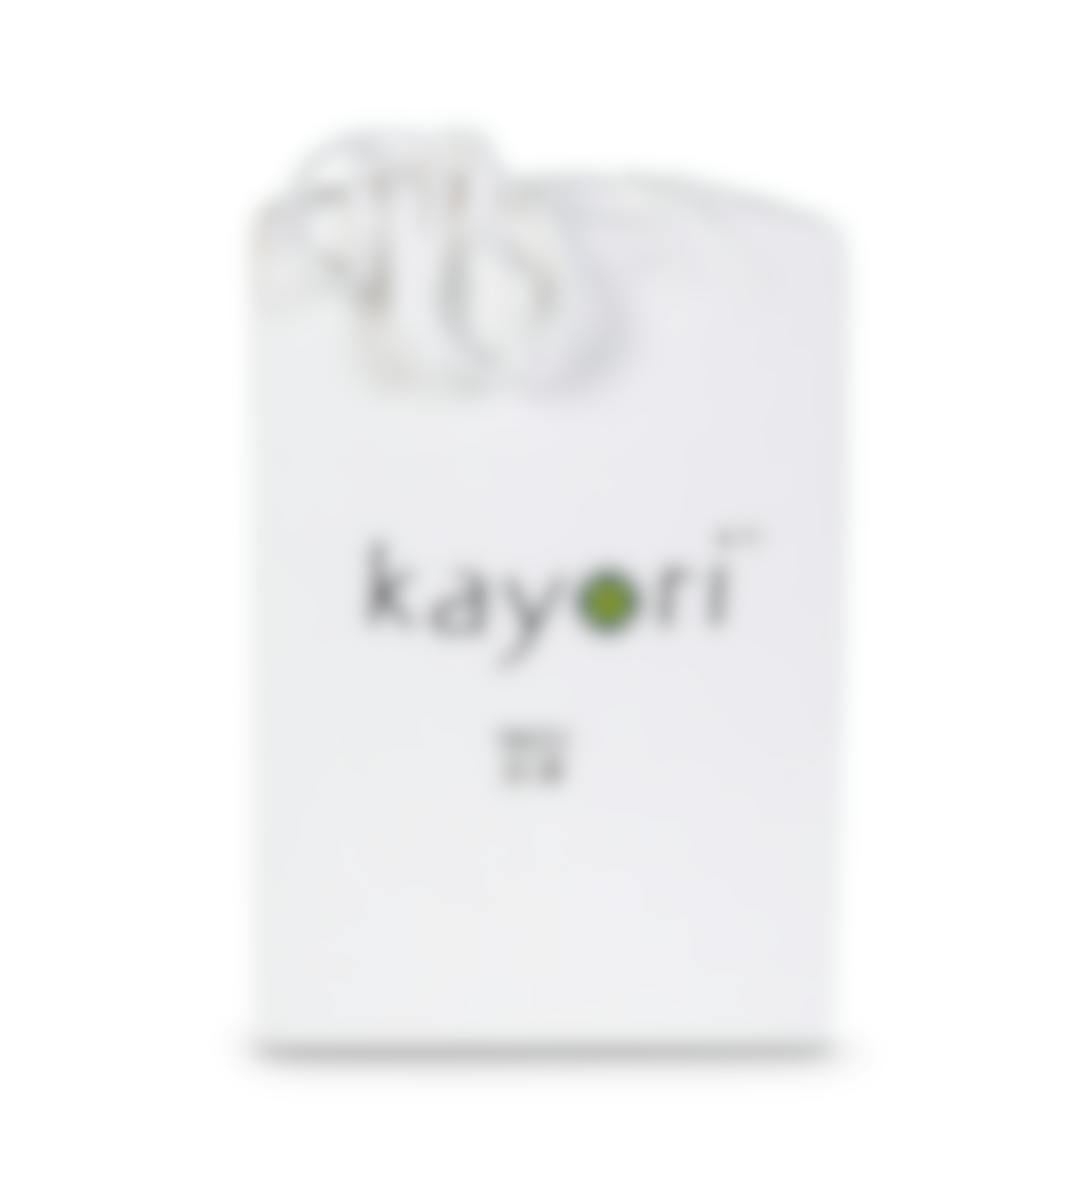 Kayori split matrasbeschermer katoenjersey (hoek 40 cm) 200-220 x 200-220 cm